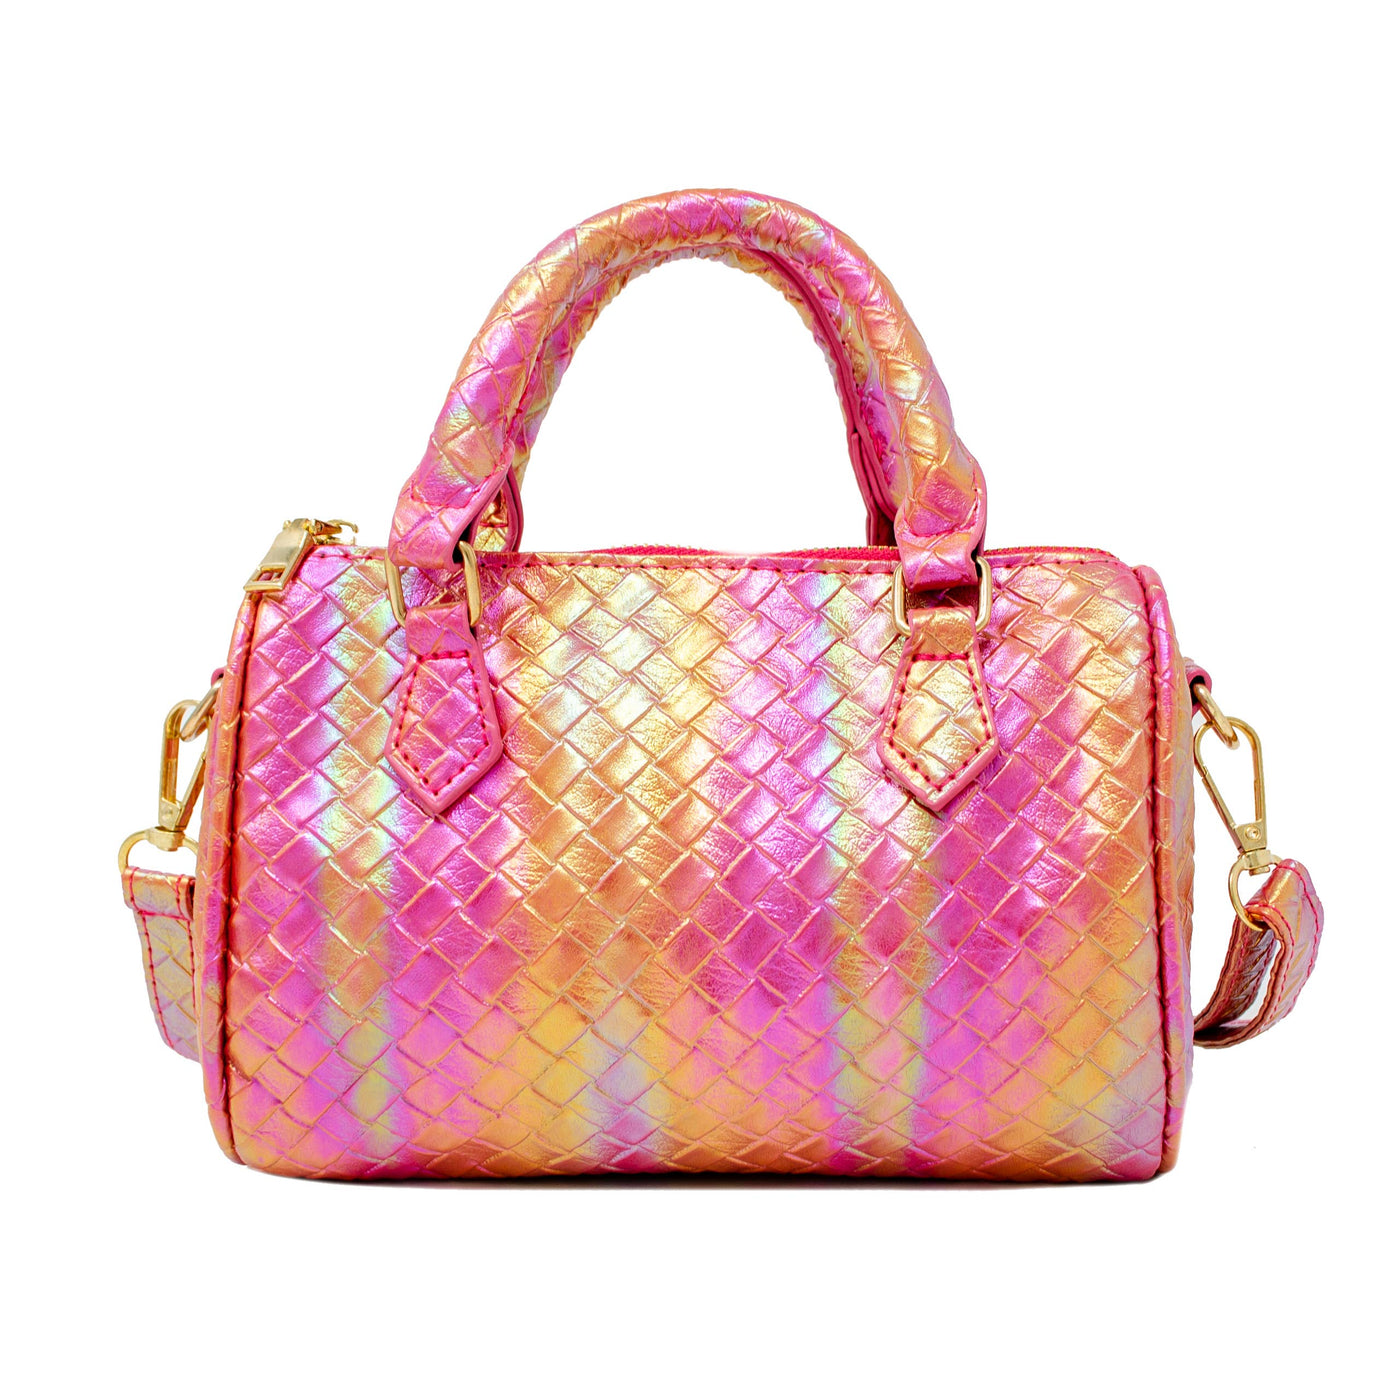 Rainbow Mermaid Duffle Bag: Pink/Orange